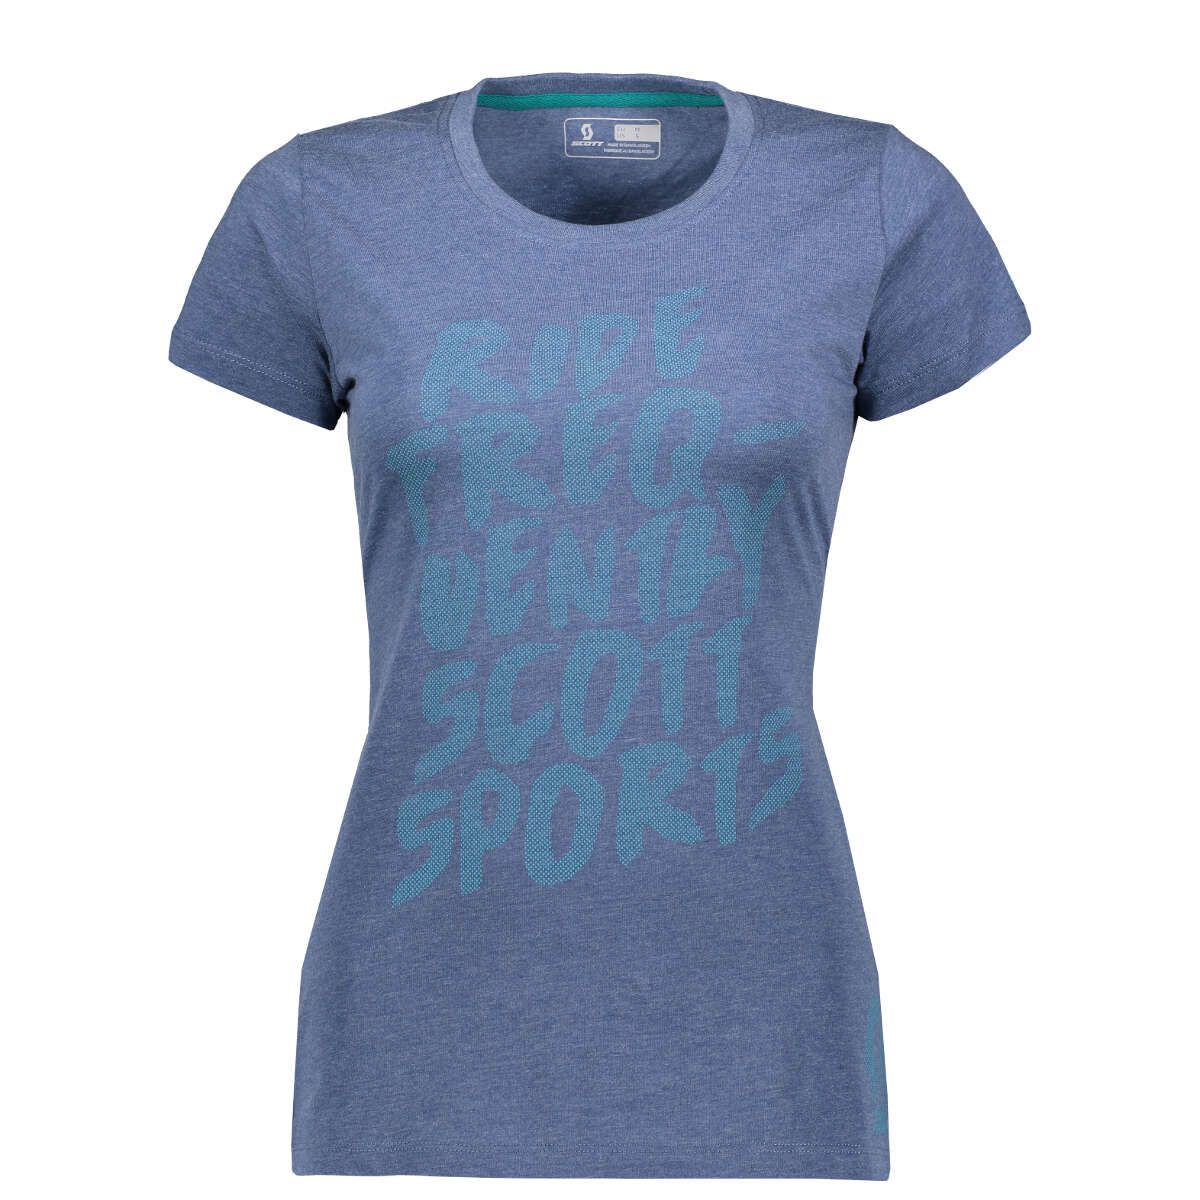 Scott Femme T-Shirt 10 Casual Ensign Heather Bleu